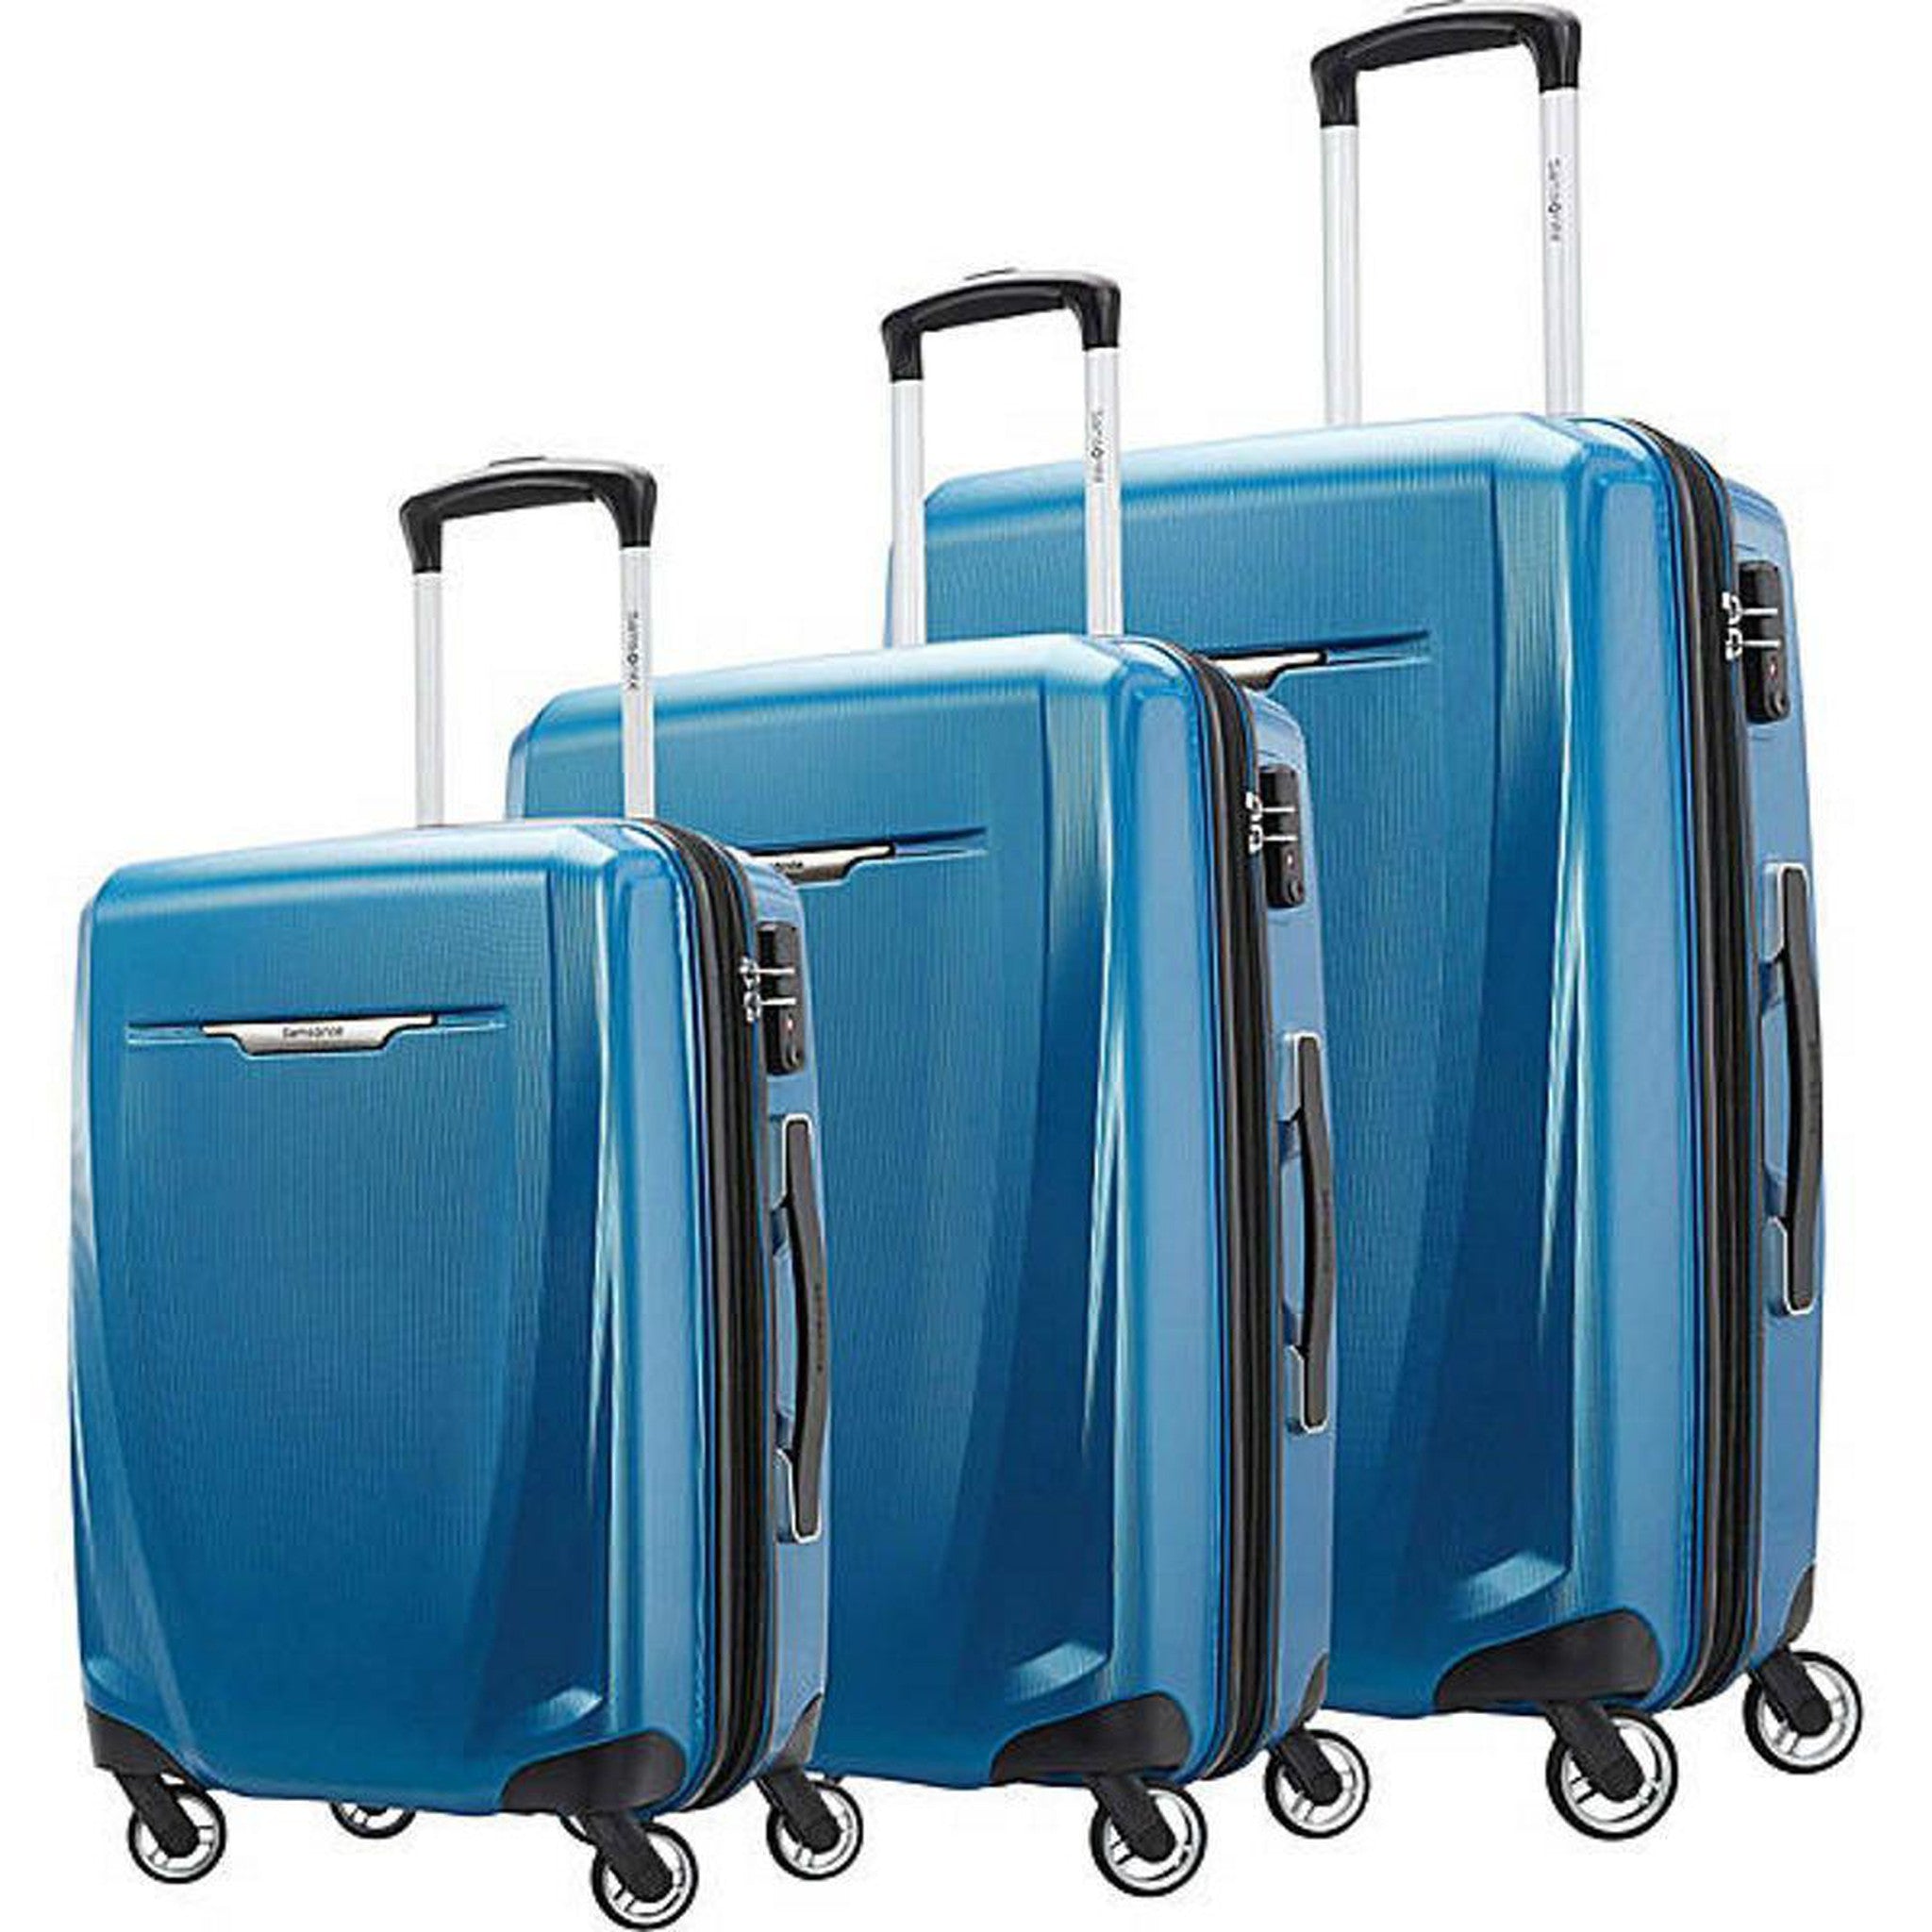 Samsonite Winfield 3 DLX 3 Piece Set (Spinner 20/25/28) – Luggage Pros